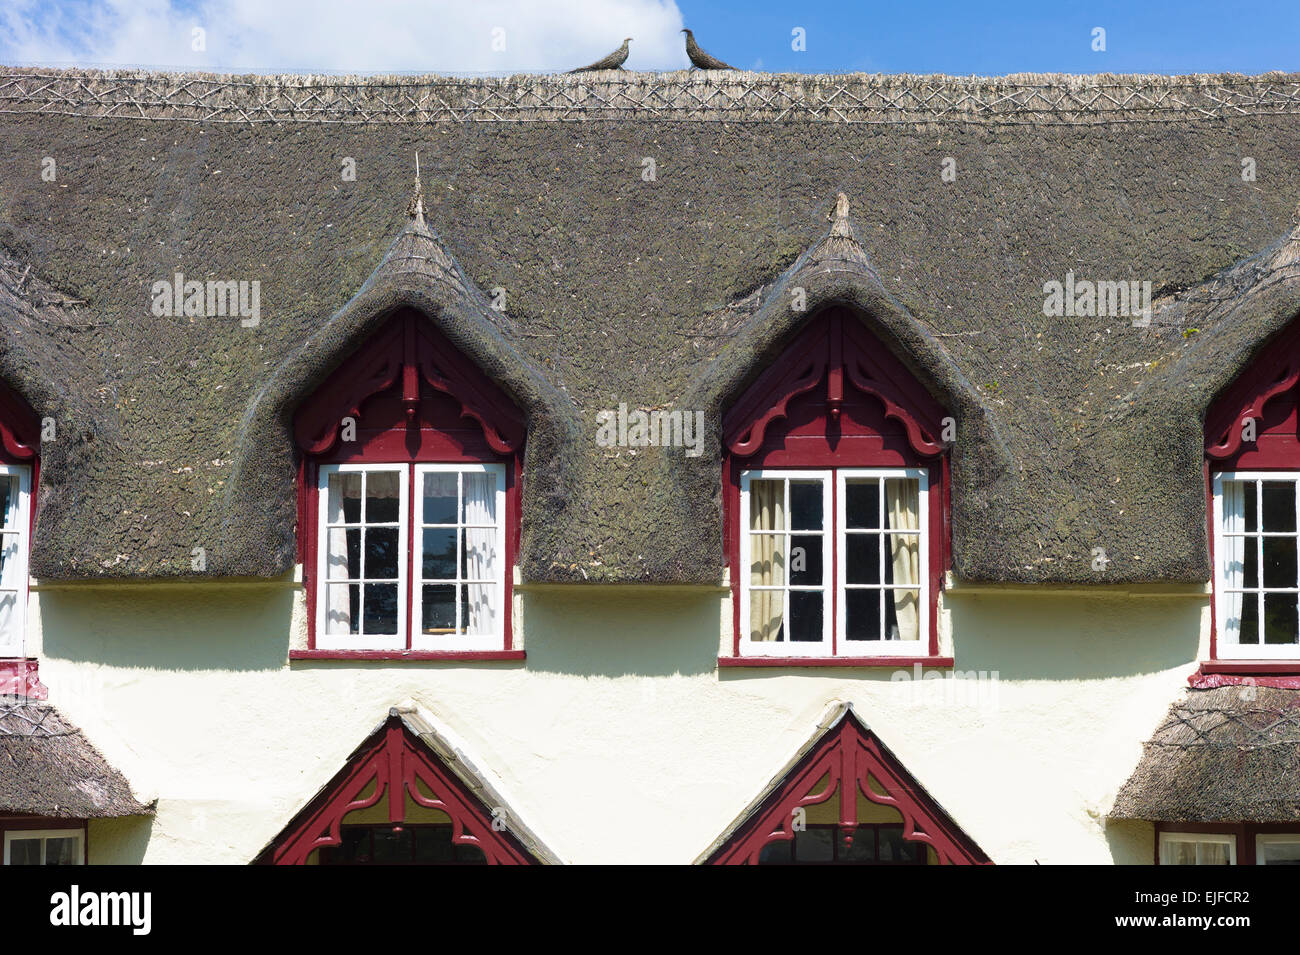 Lucarnes et toit de chaume de pittoresque typique gîte rural à Powderham dans le sud du Devon, England, UK Banque D'Images